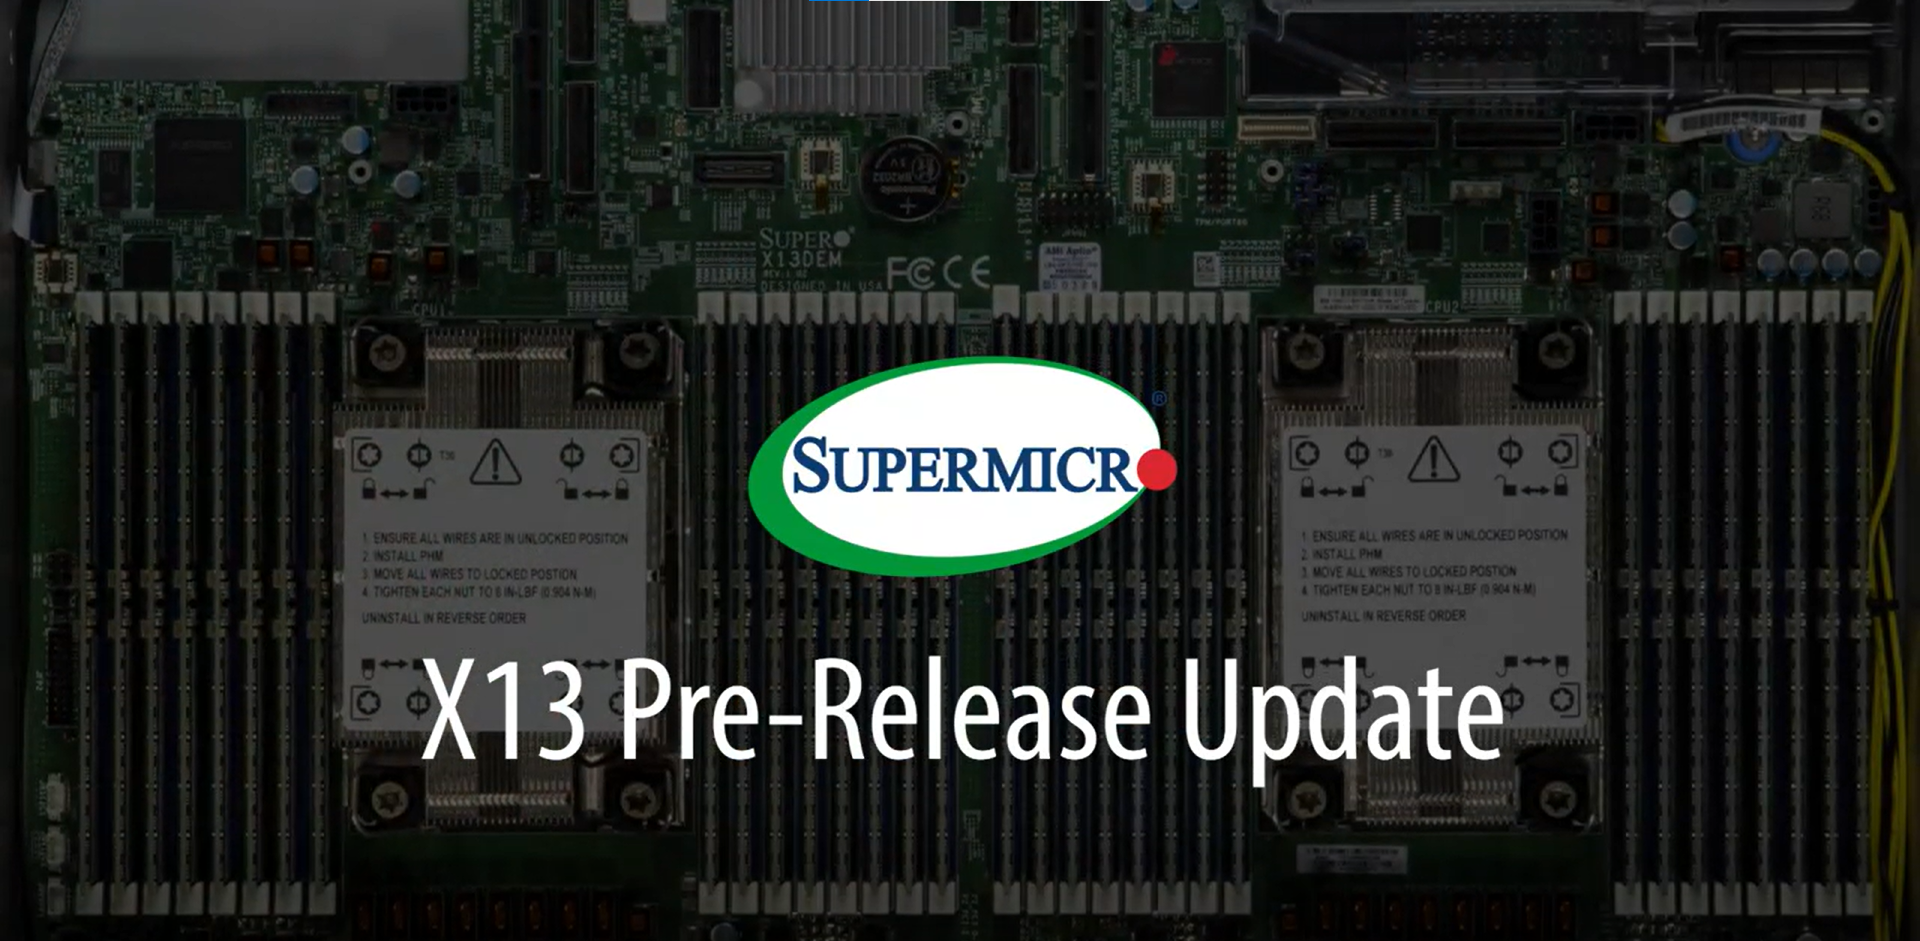 Supermicro ra mắt danh mục máy chủ Intel Xeon Scalable Gen 4 mới, tối ưu hiệu suất và hiệu quả làm mát